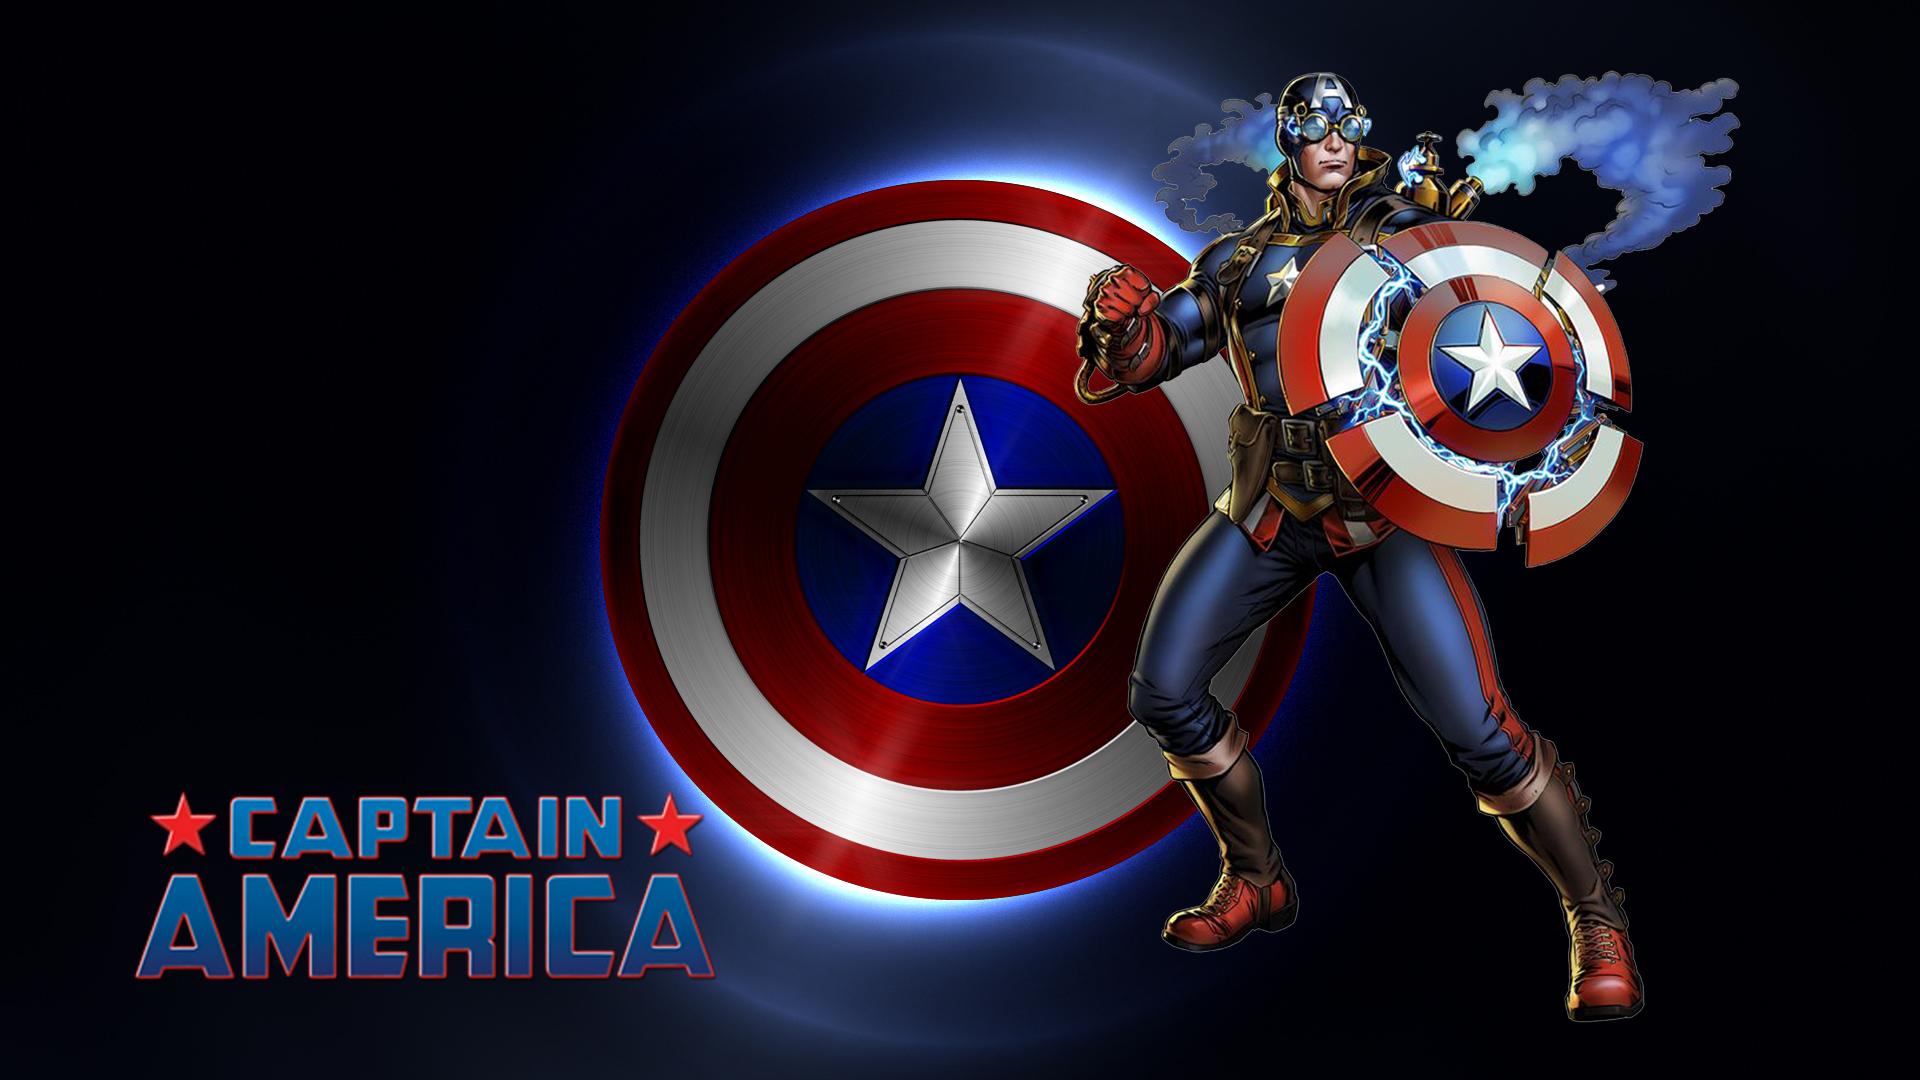 Marvel Captain America Avengers Alliance 2 Desktop Background